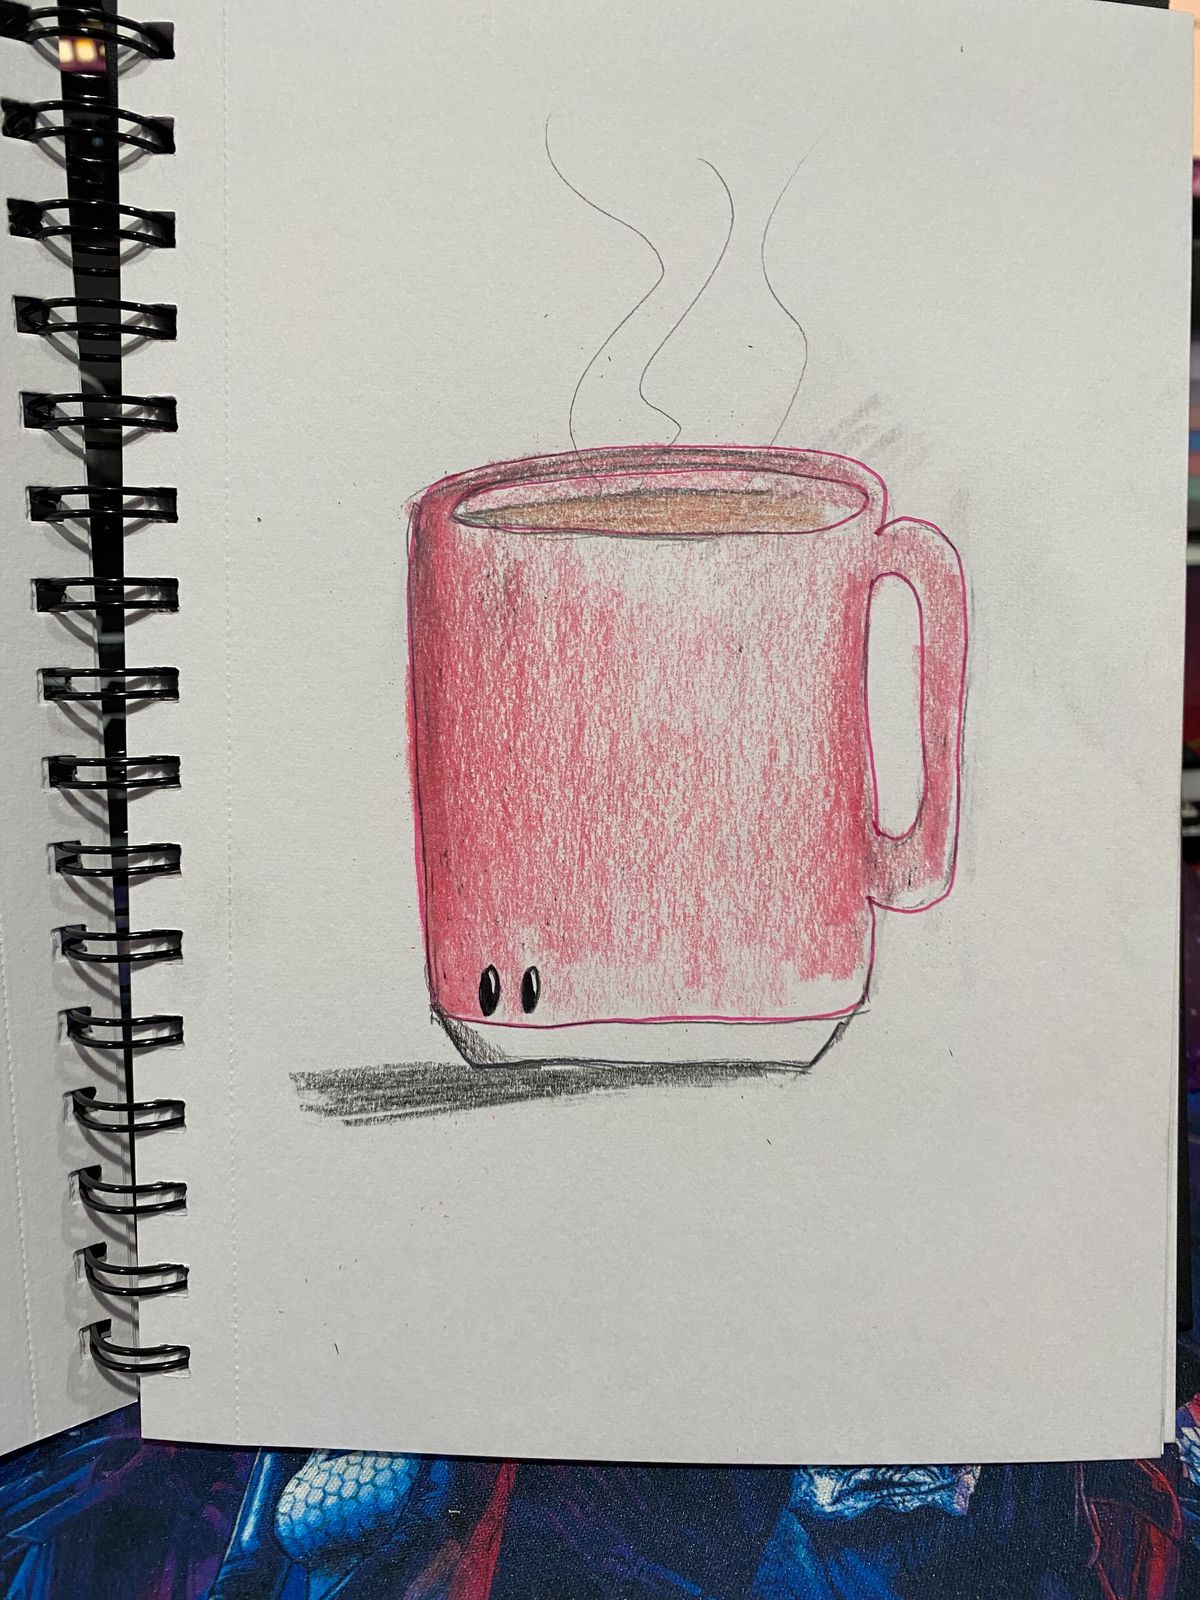 Un disegno di Kirby allungato su una tazza di caffè